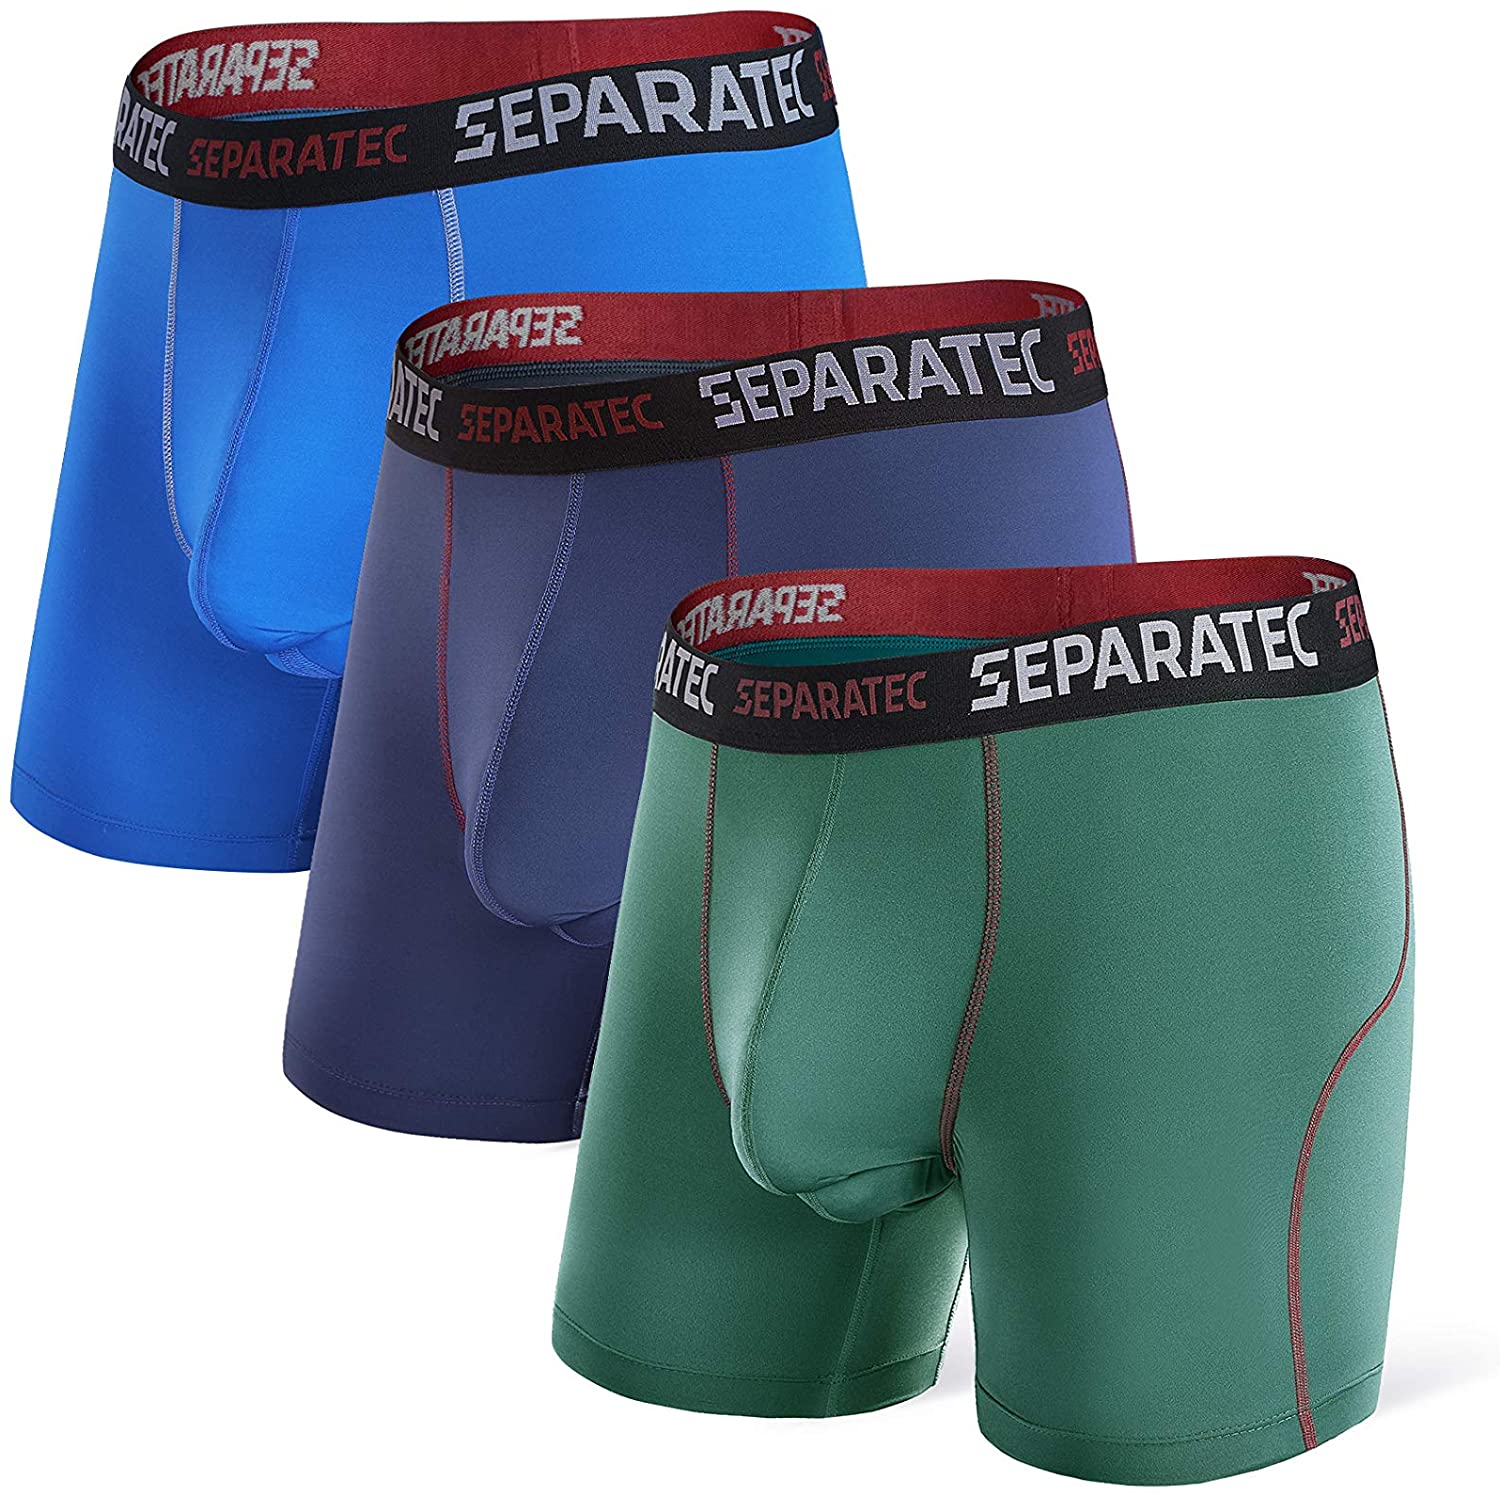 40S Super Soft Breathable Cotton Boxer Briefs 3 Pack - Separatec